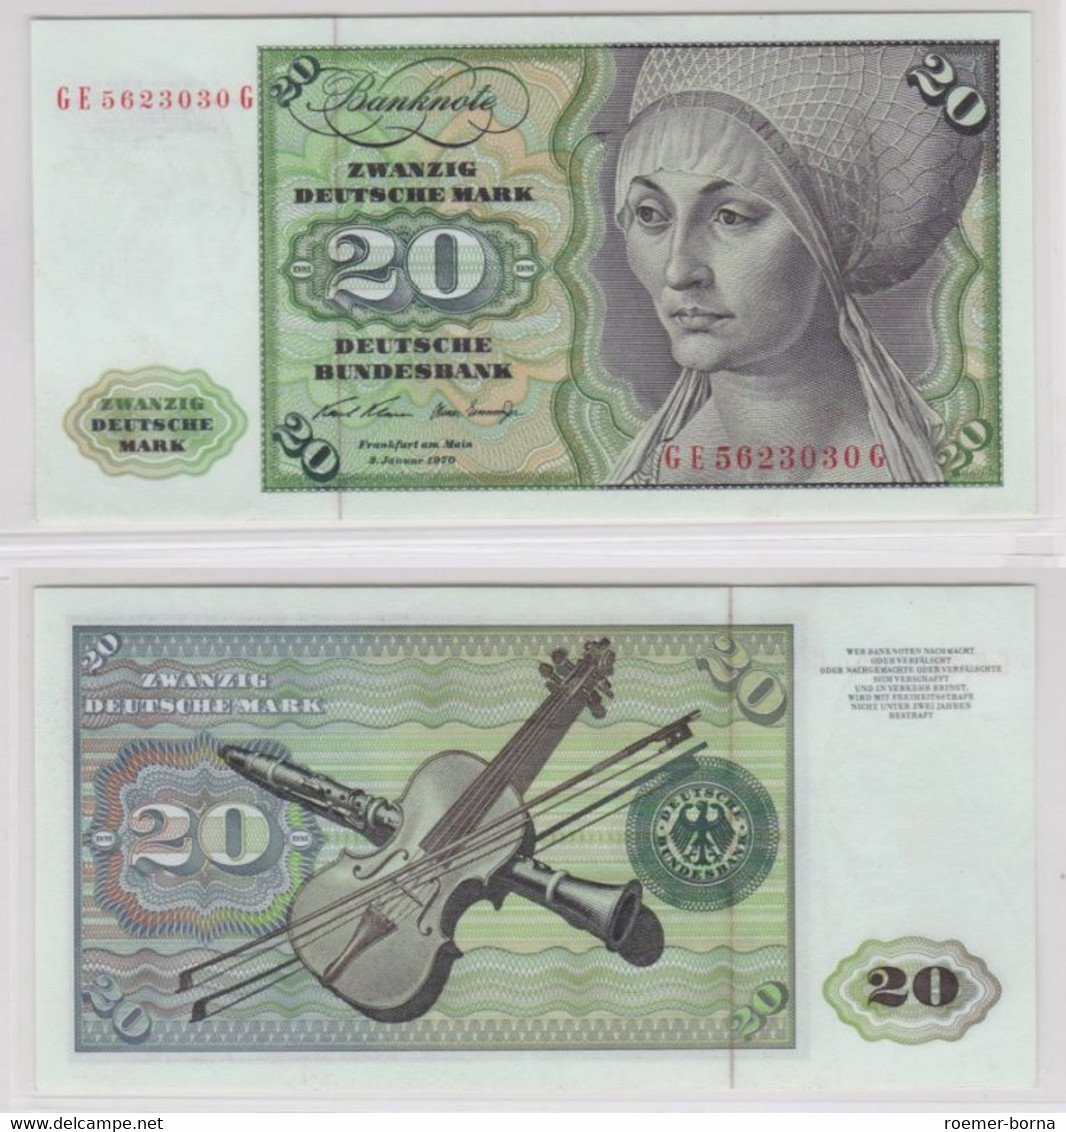 T145971 Banknote 20 DM Deutsche Mark Ro. 271b Schein 2.Jan. 1970 KN GE 5623030 G - 20 DM